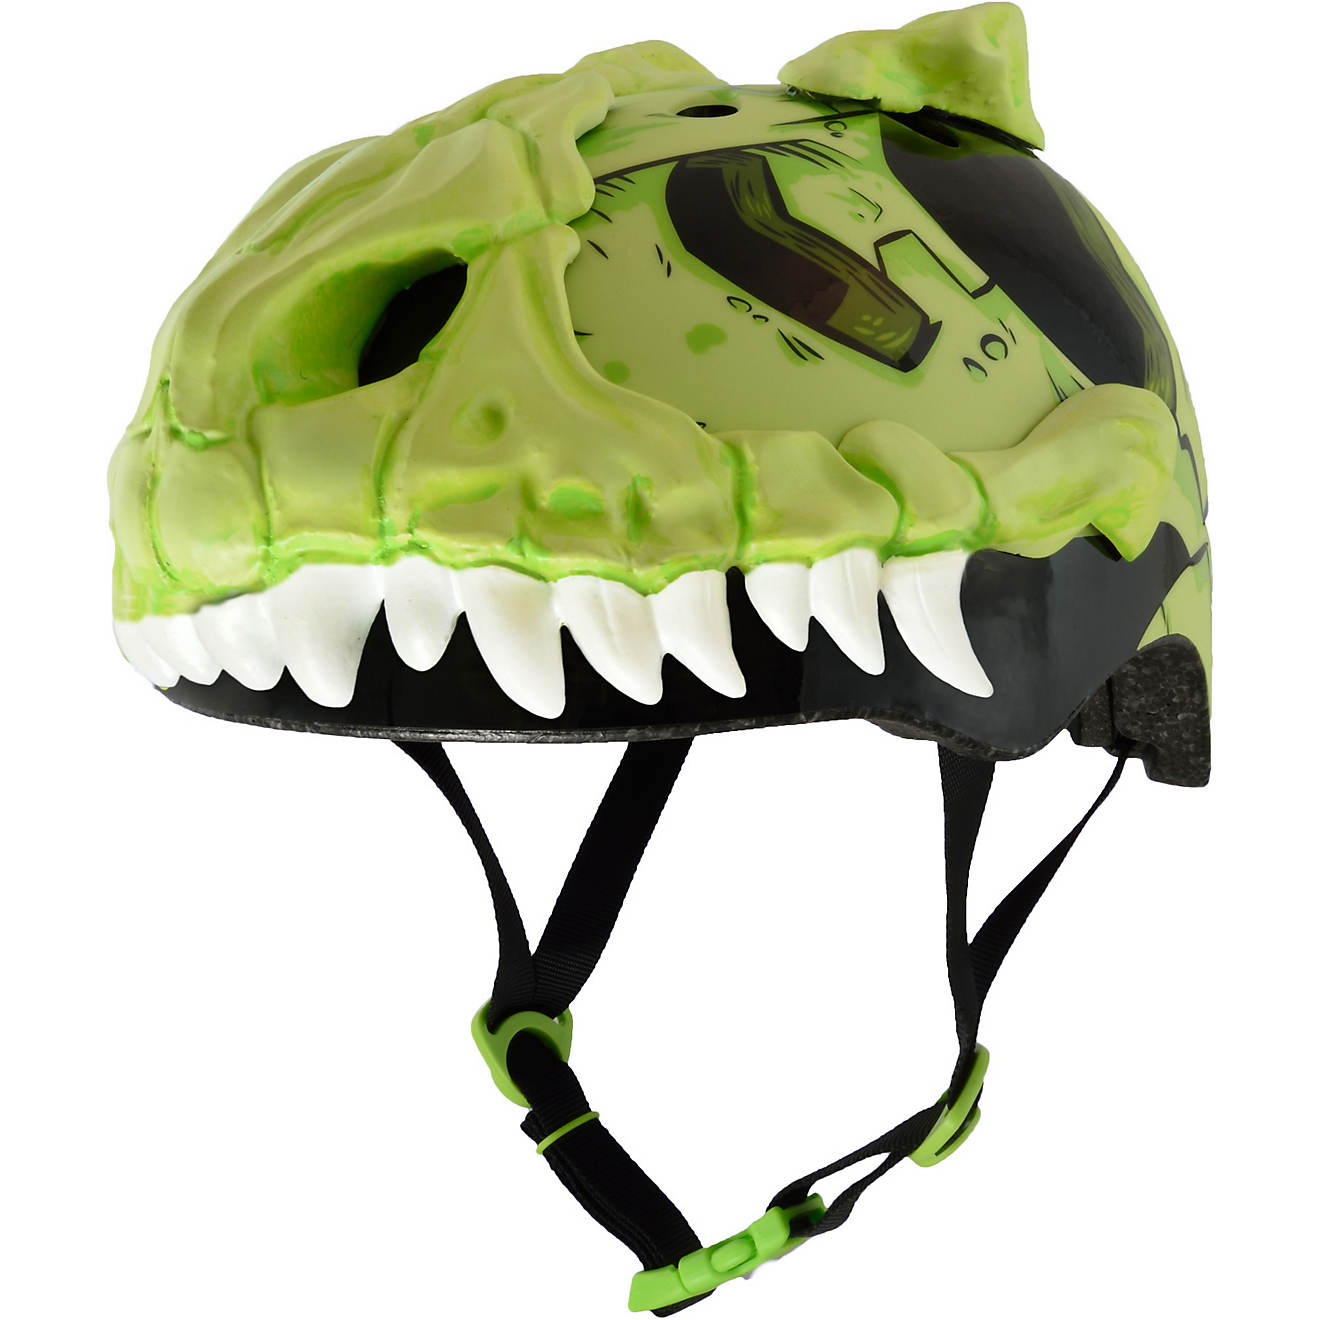 Raskullz Kids' C-Preme T-Bone Bike Helmet                                                                                        - view number 1